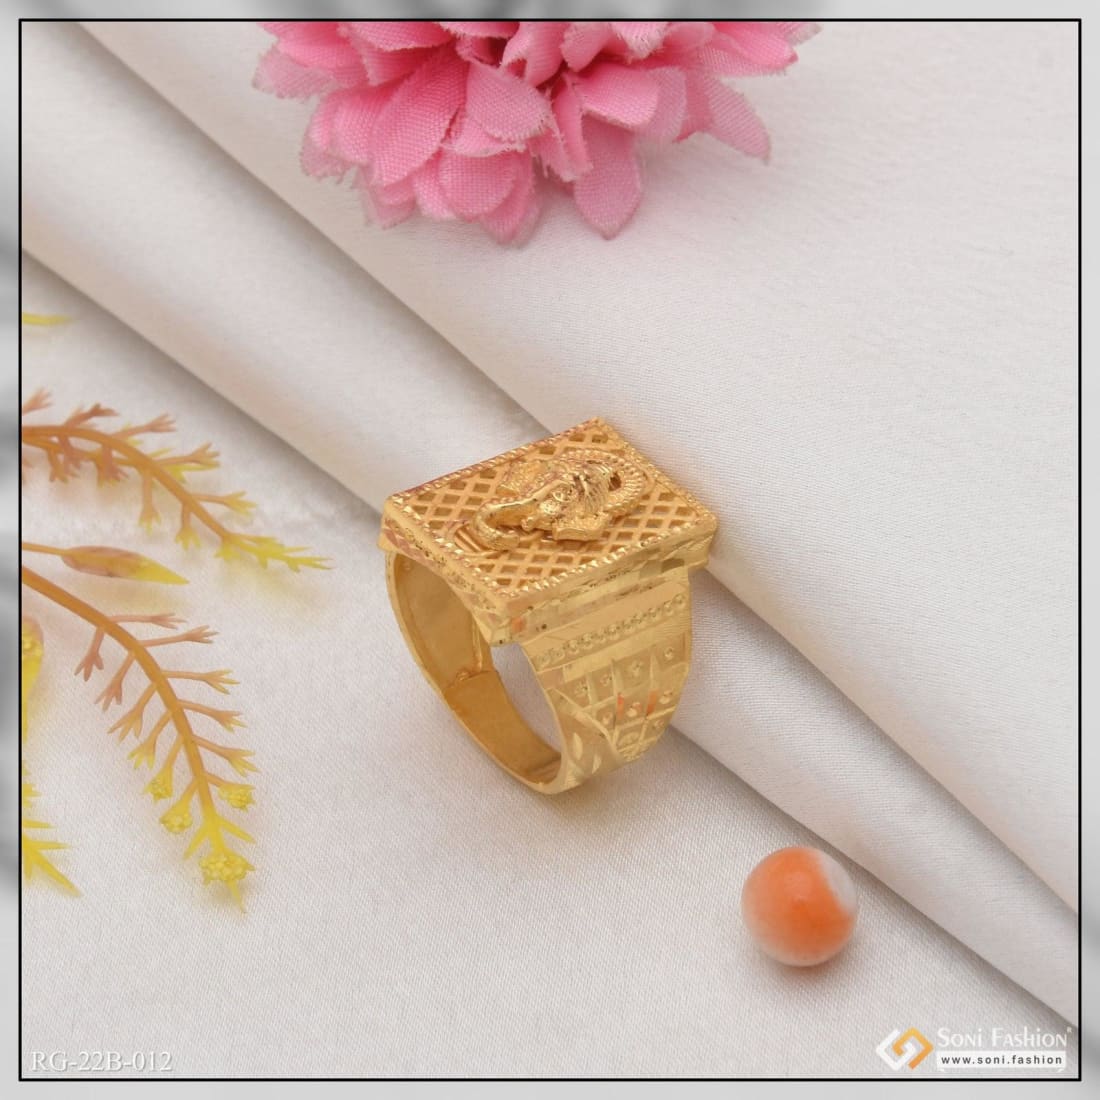 2 Gram Gold Finger Ring High Quality Design Shop Online FR1392